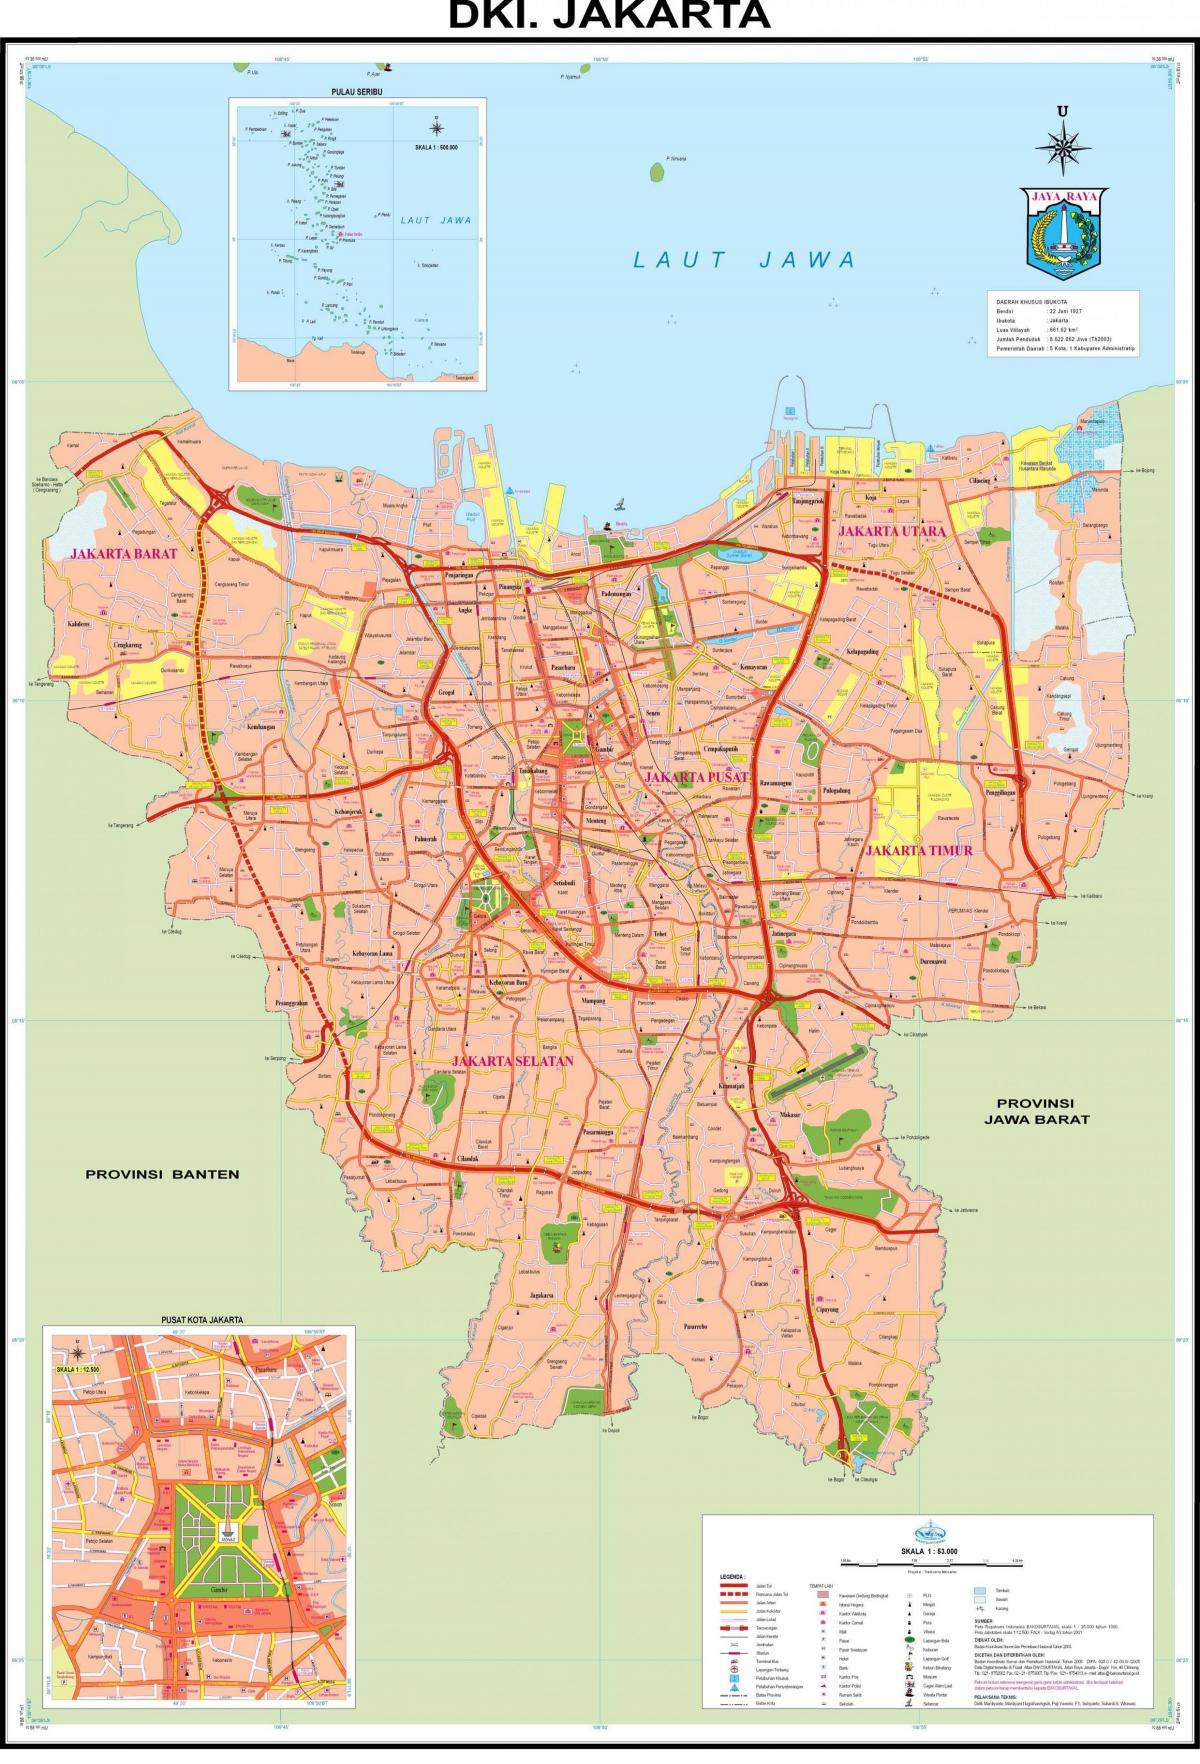 κεντρική Τζακάρτα εμφάνιση χάρτη